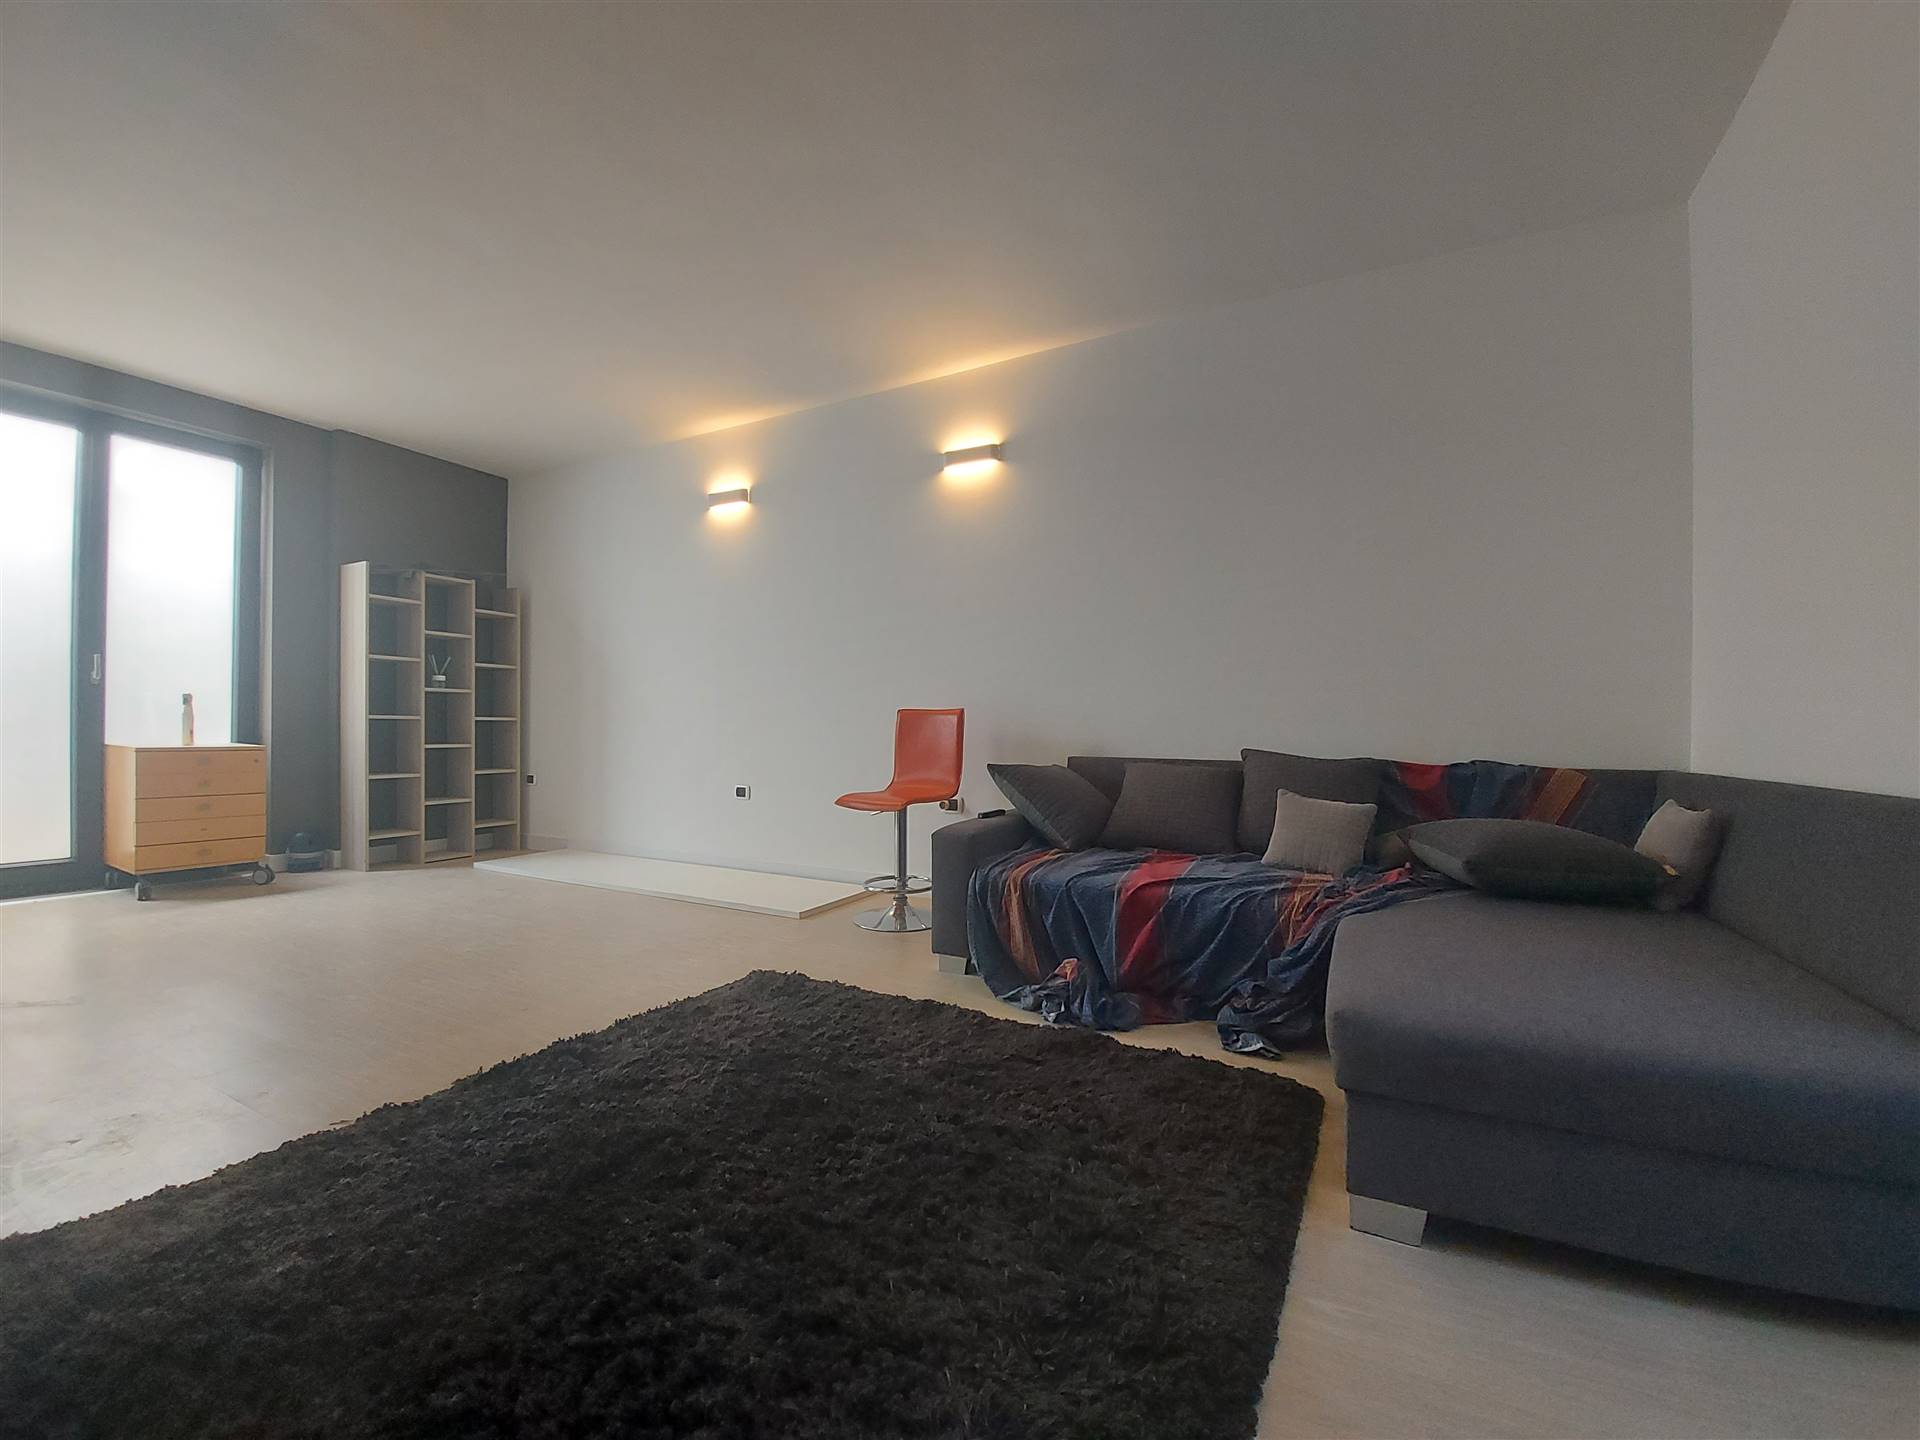 Villa in vendita a Mesagne, 3 locali, prezzo € 125.000 | PortaleAgenzieImmobiliari.it